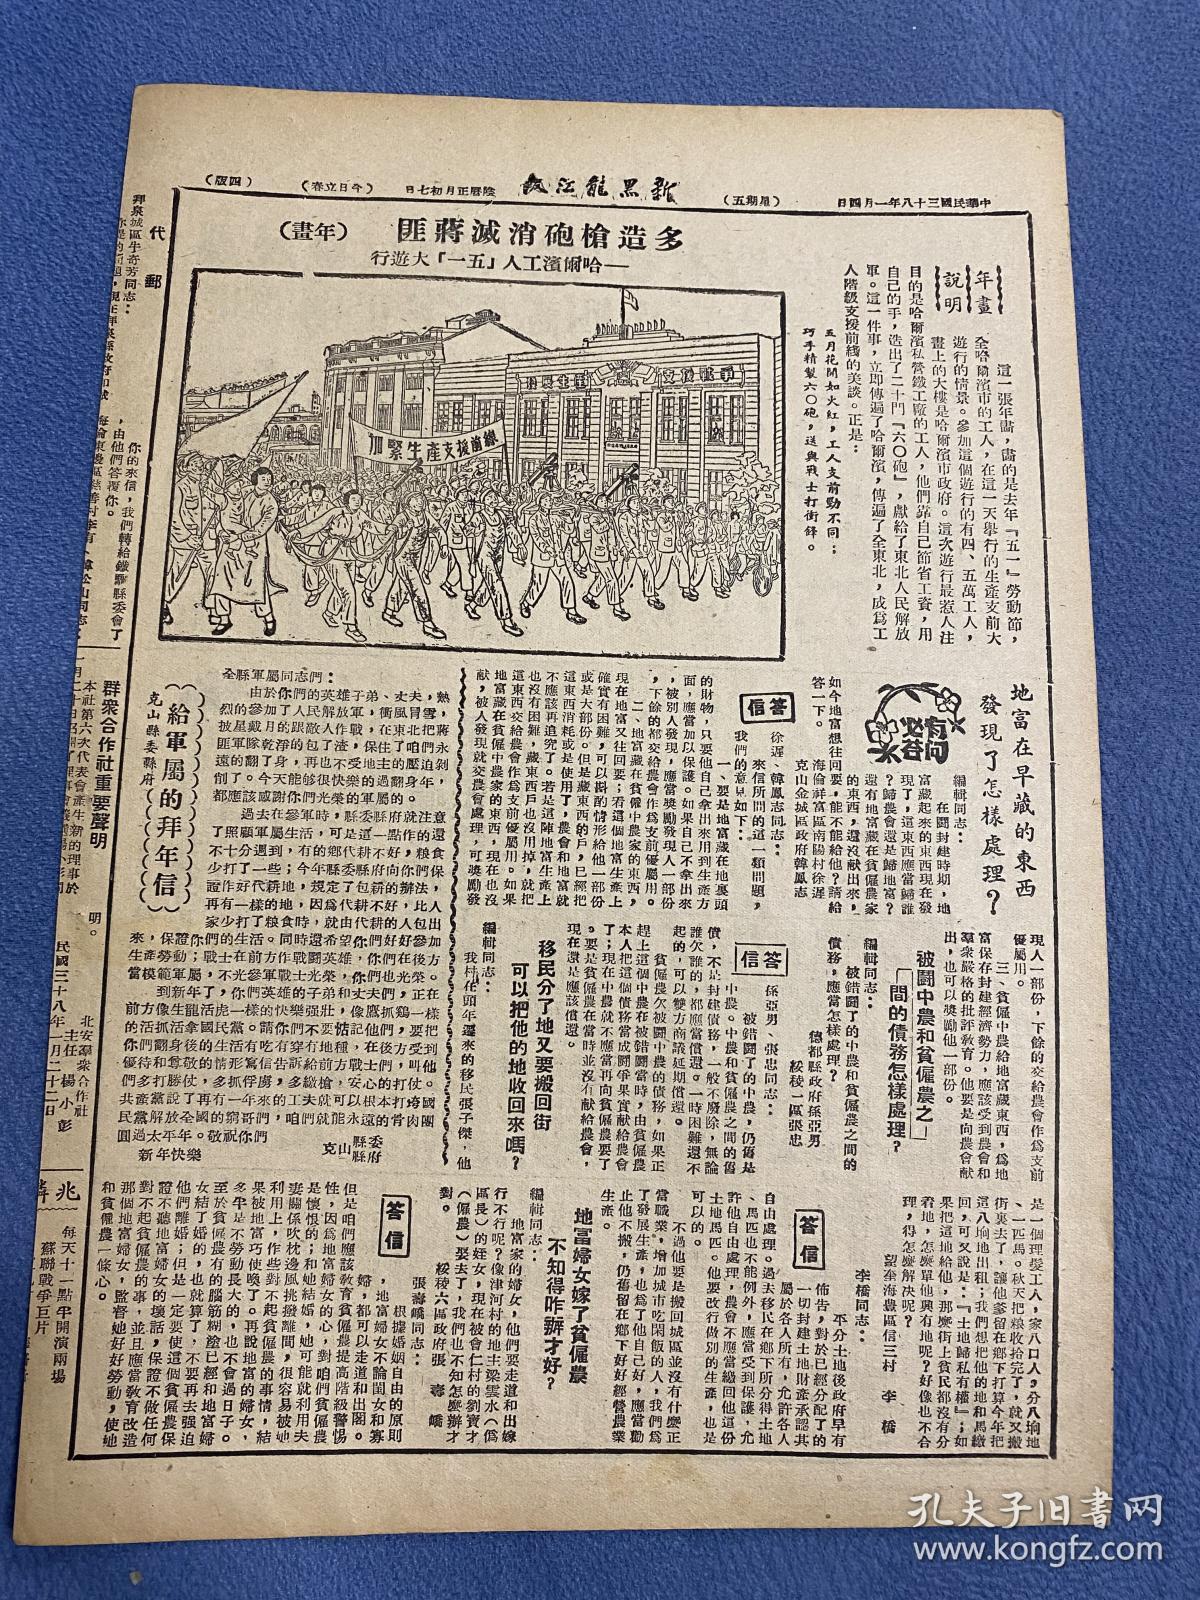 1949年（新黑龙江报）2月4号，北平解放，欢迎人民解放军入城，中国革命运动的大发展，中共中央发布庆祝平津解放口号，